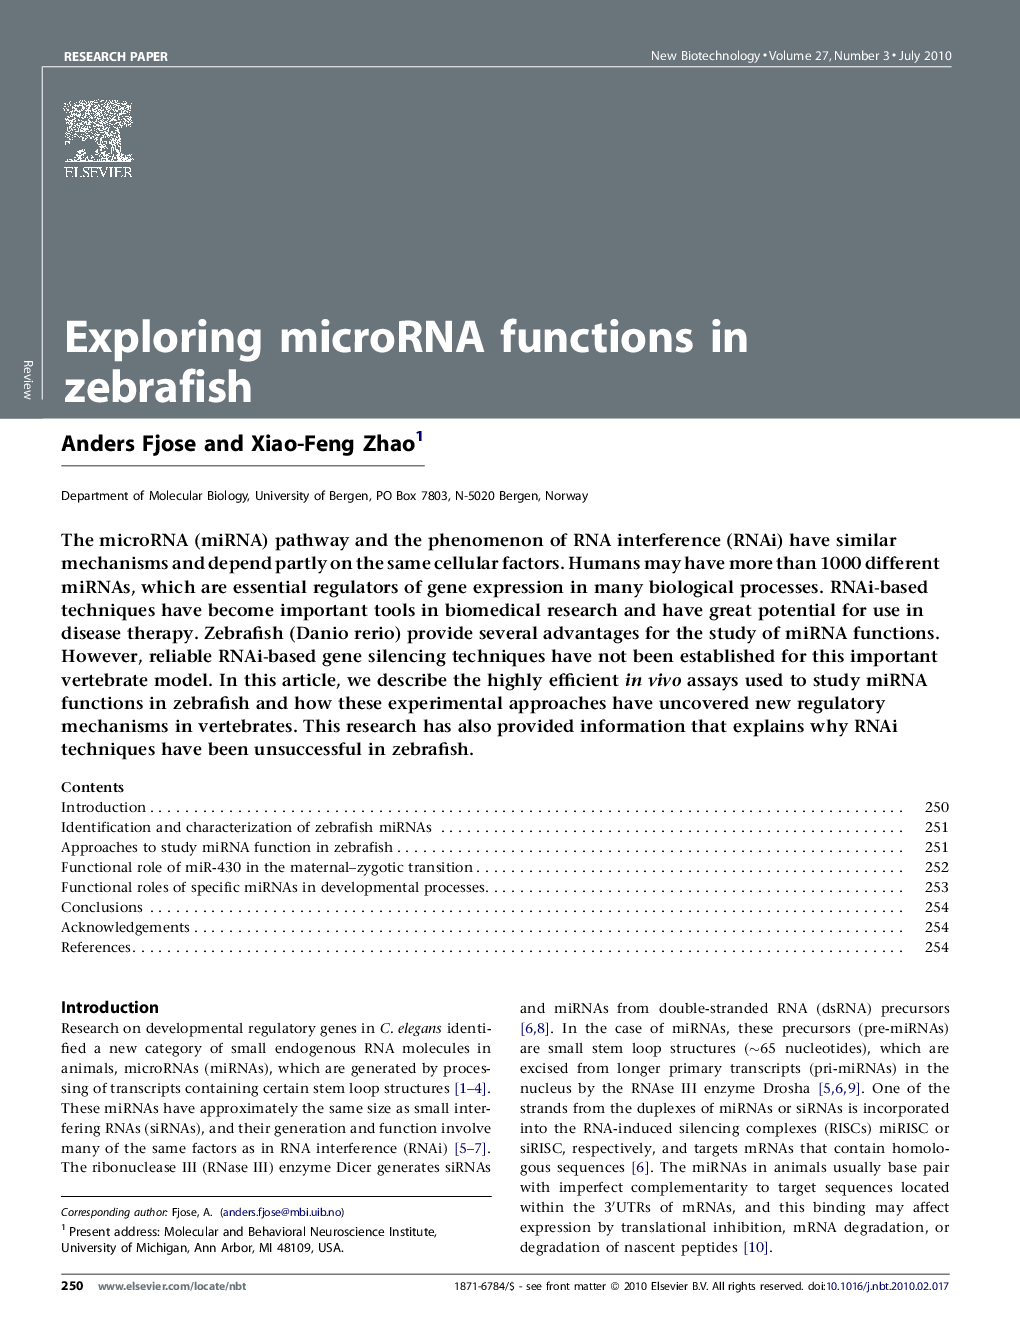 Exploring microRNA functions in zebrafish